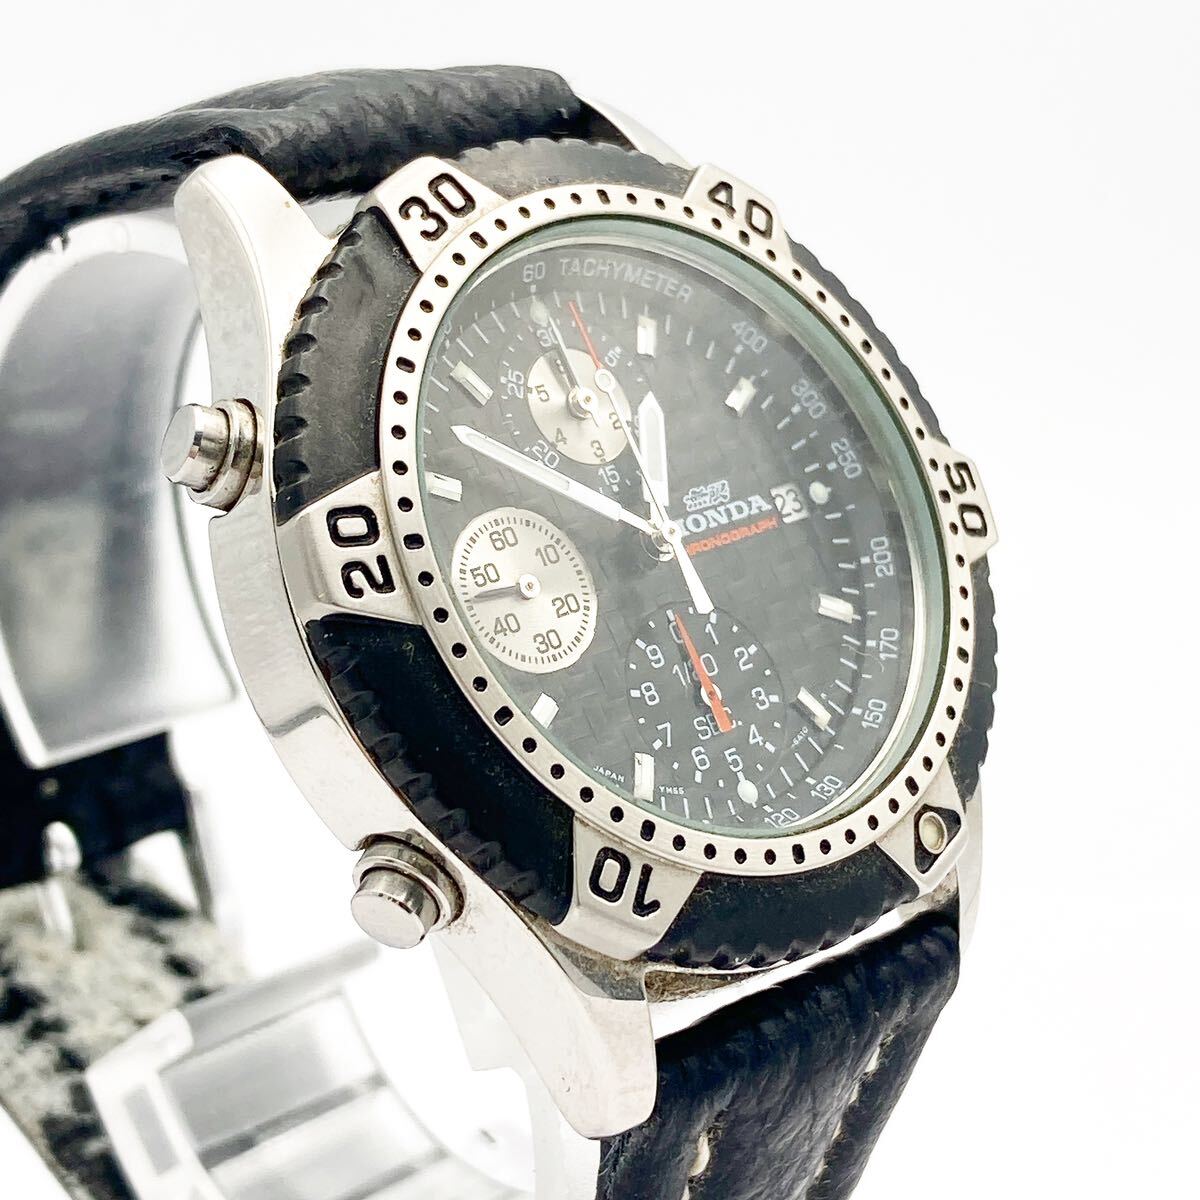 HONDA ムゲンホンダ YM55-6A10 chronographクロノグラフ 自動車 ブランド クォーツ 腕時計 alpひ0404_画像3